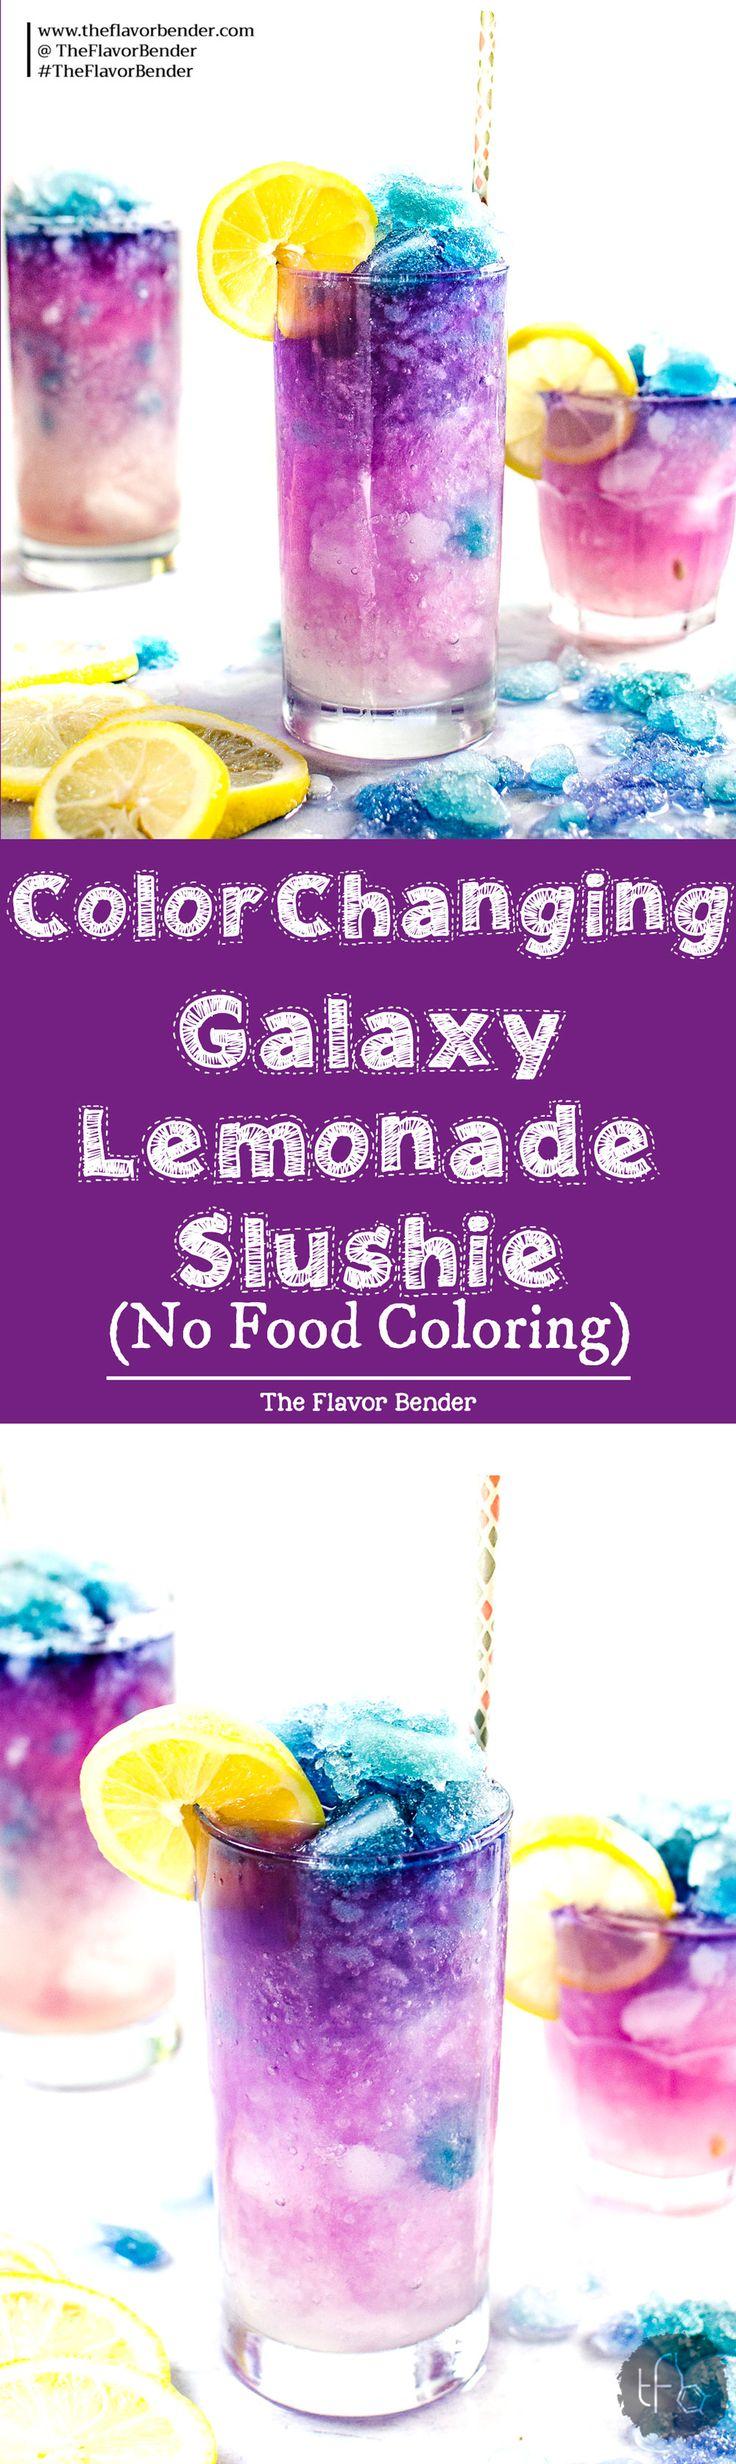 Wedding - Color Changing Lemonade Slushie (Galaxy Lemonade Slushie)